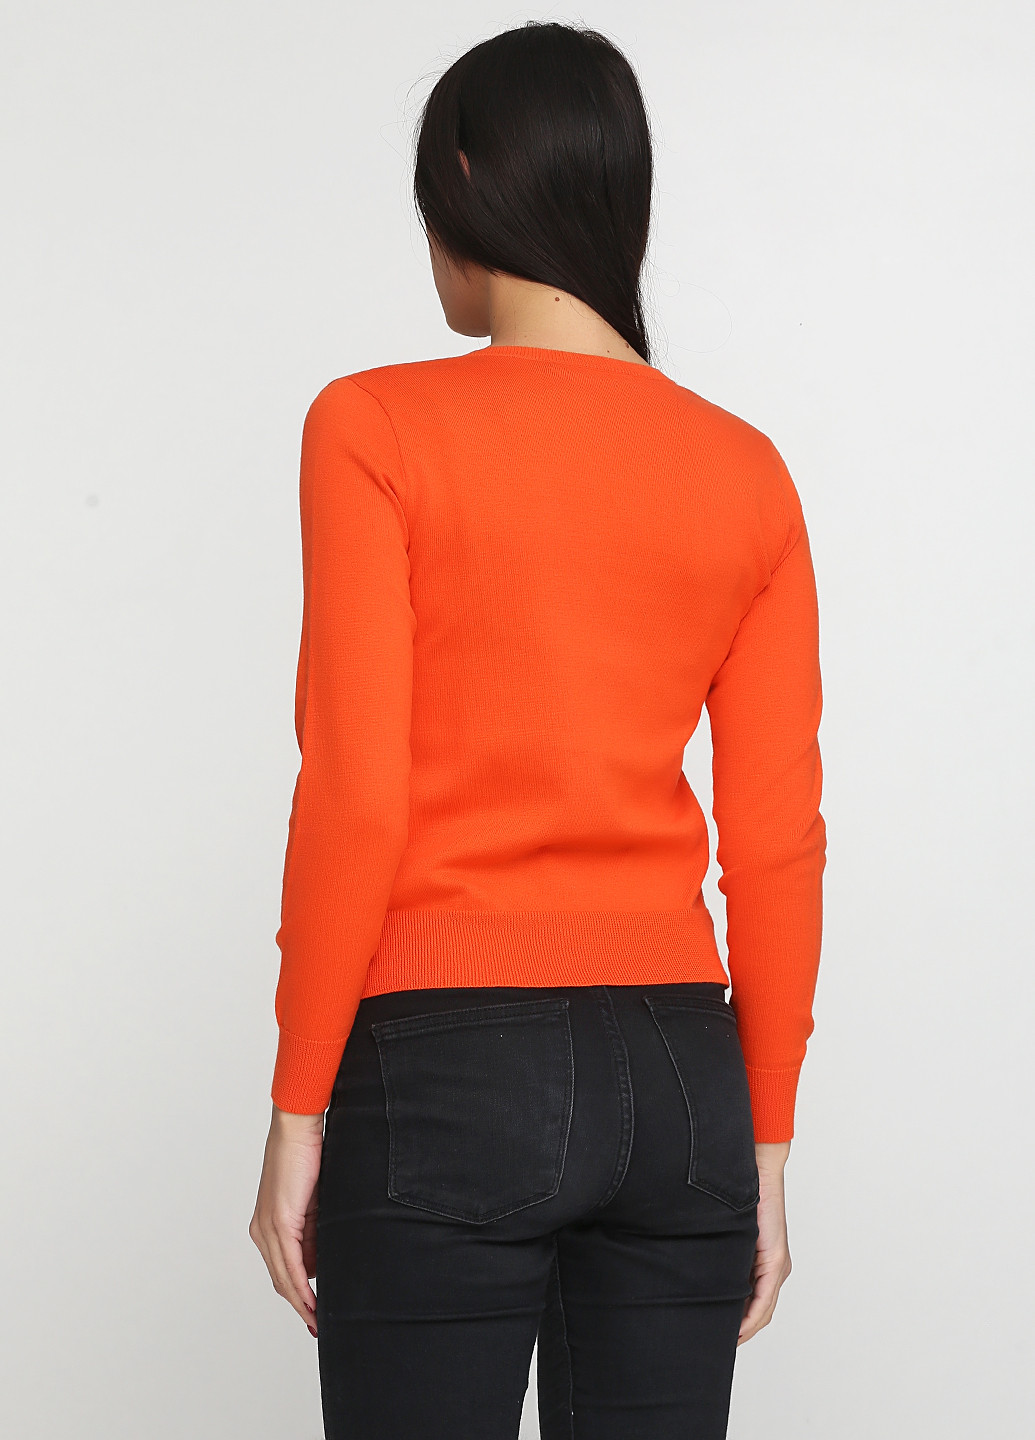 Оранжевый демисезонный пуловер пуловер Ralph Lauren